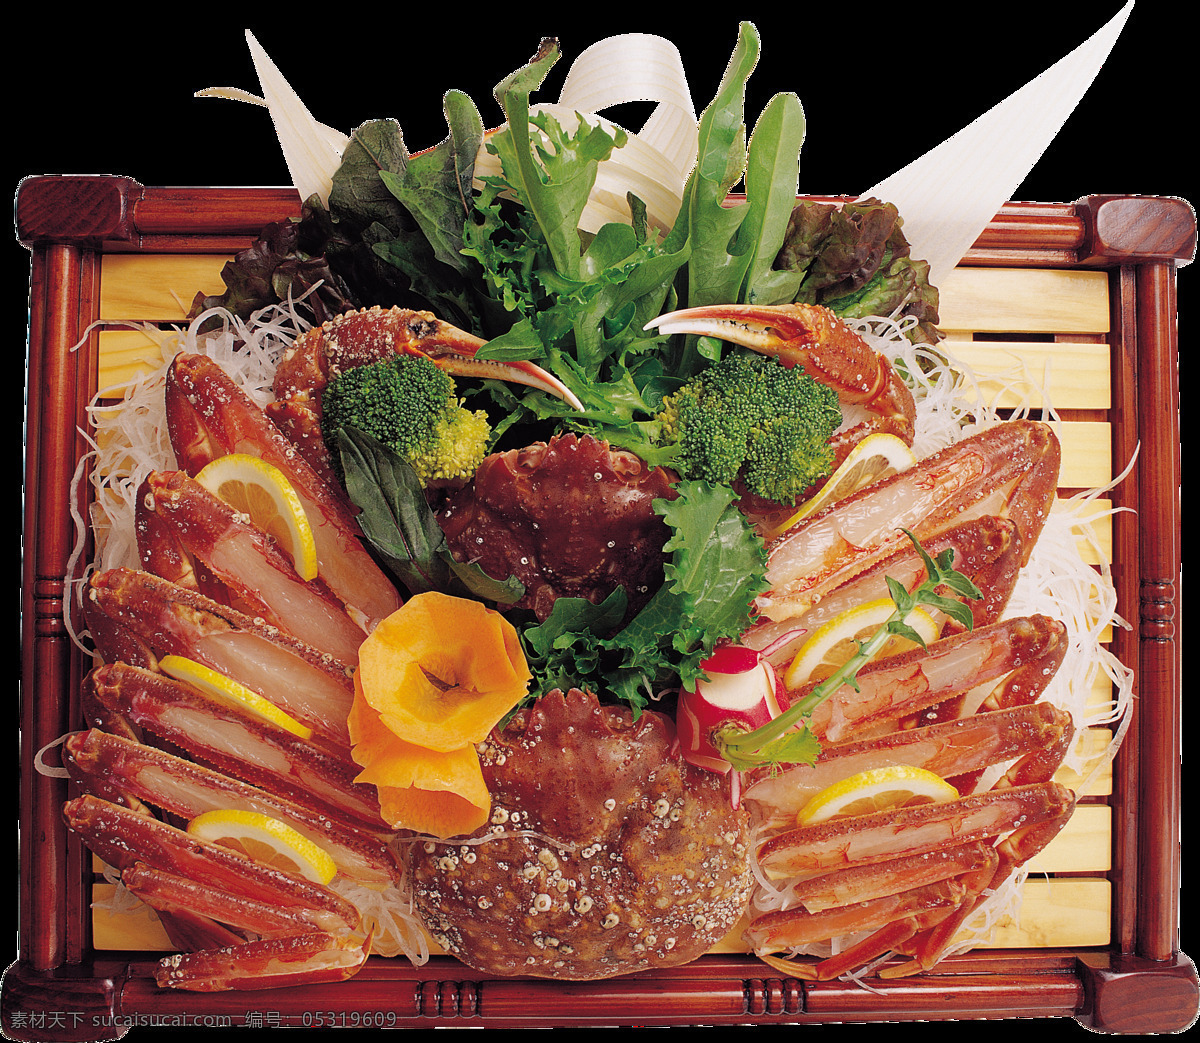 精美 螃蟹 日式 料理 美食 产品 实物 产品实物 木制餐盘 螃蟹料理 日本文化 日式美食 蔬菜